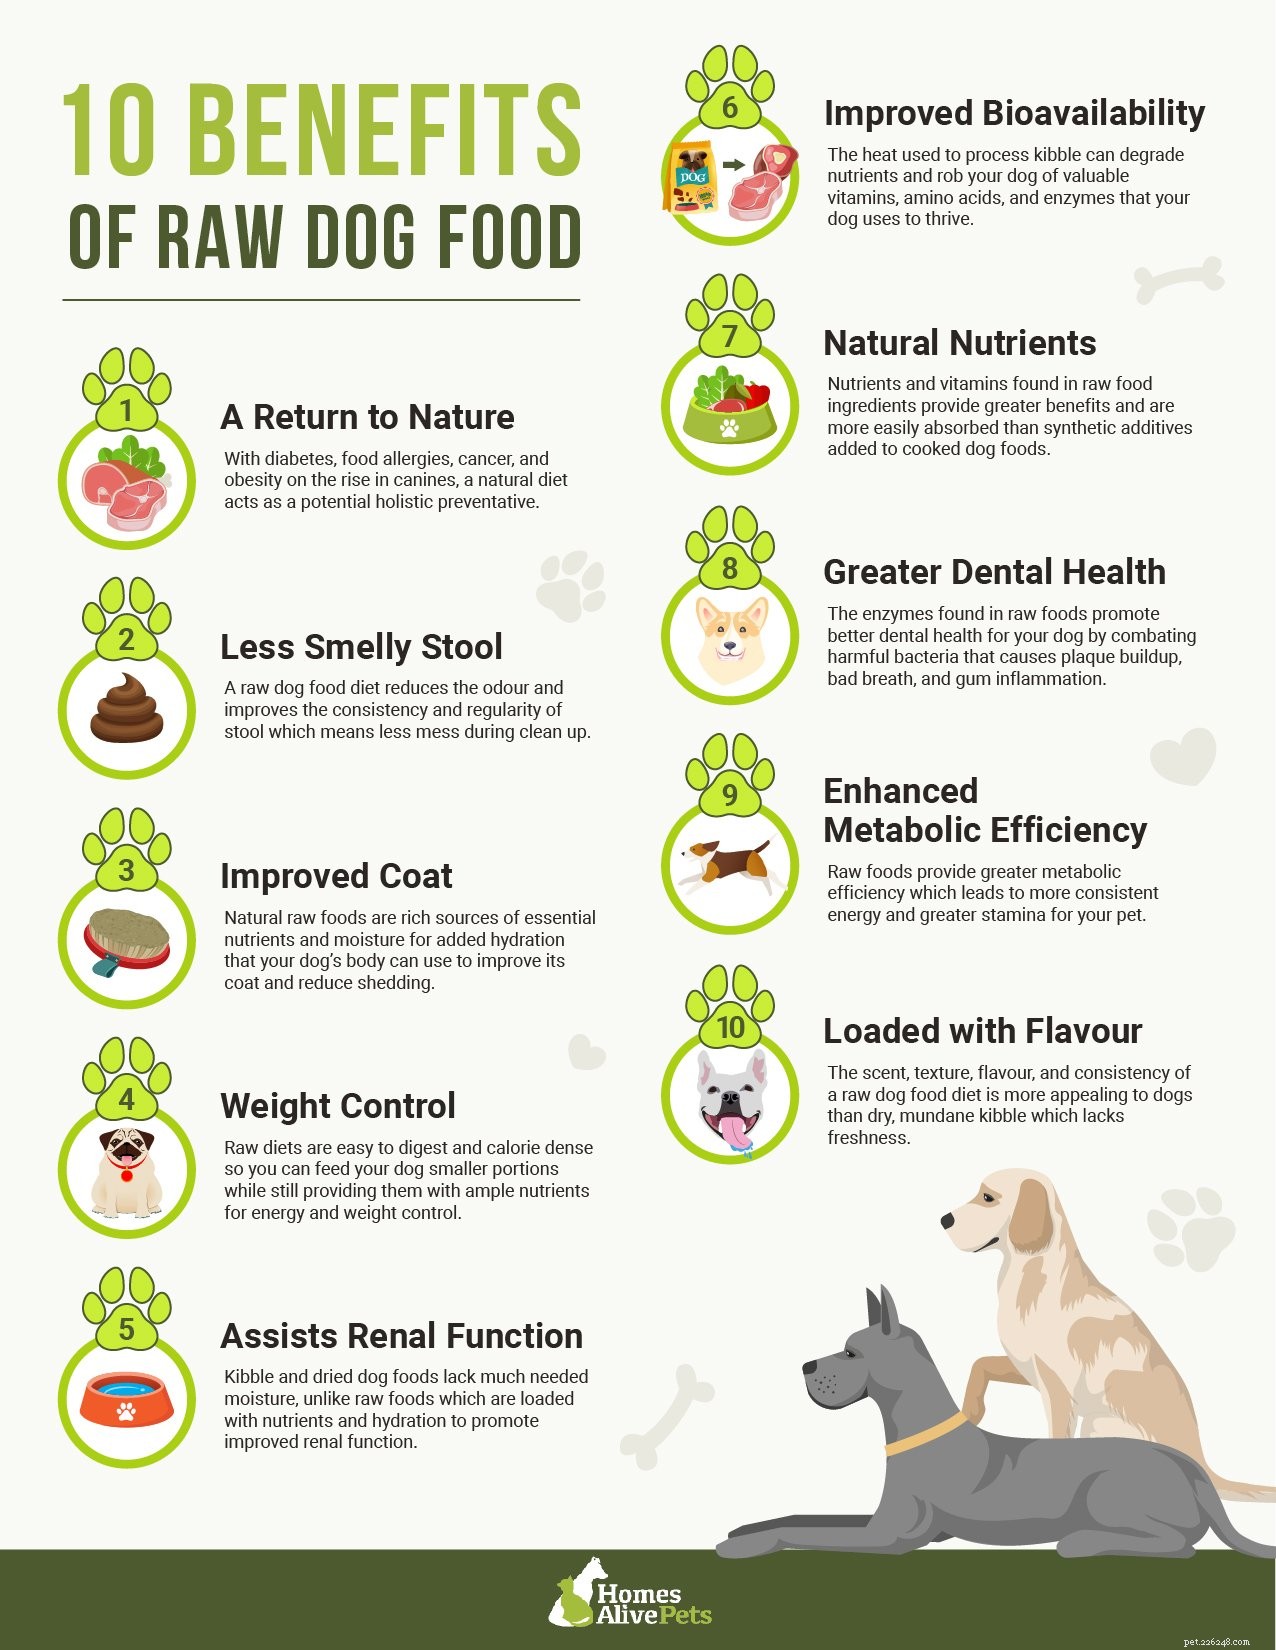 Сырой корм для собак для начинающих:сколько сырой пищи следует давать собаке?